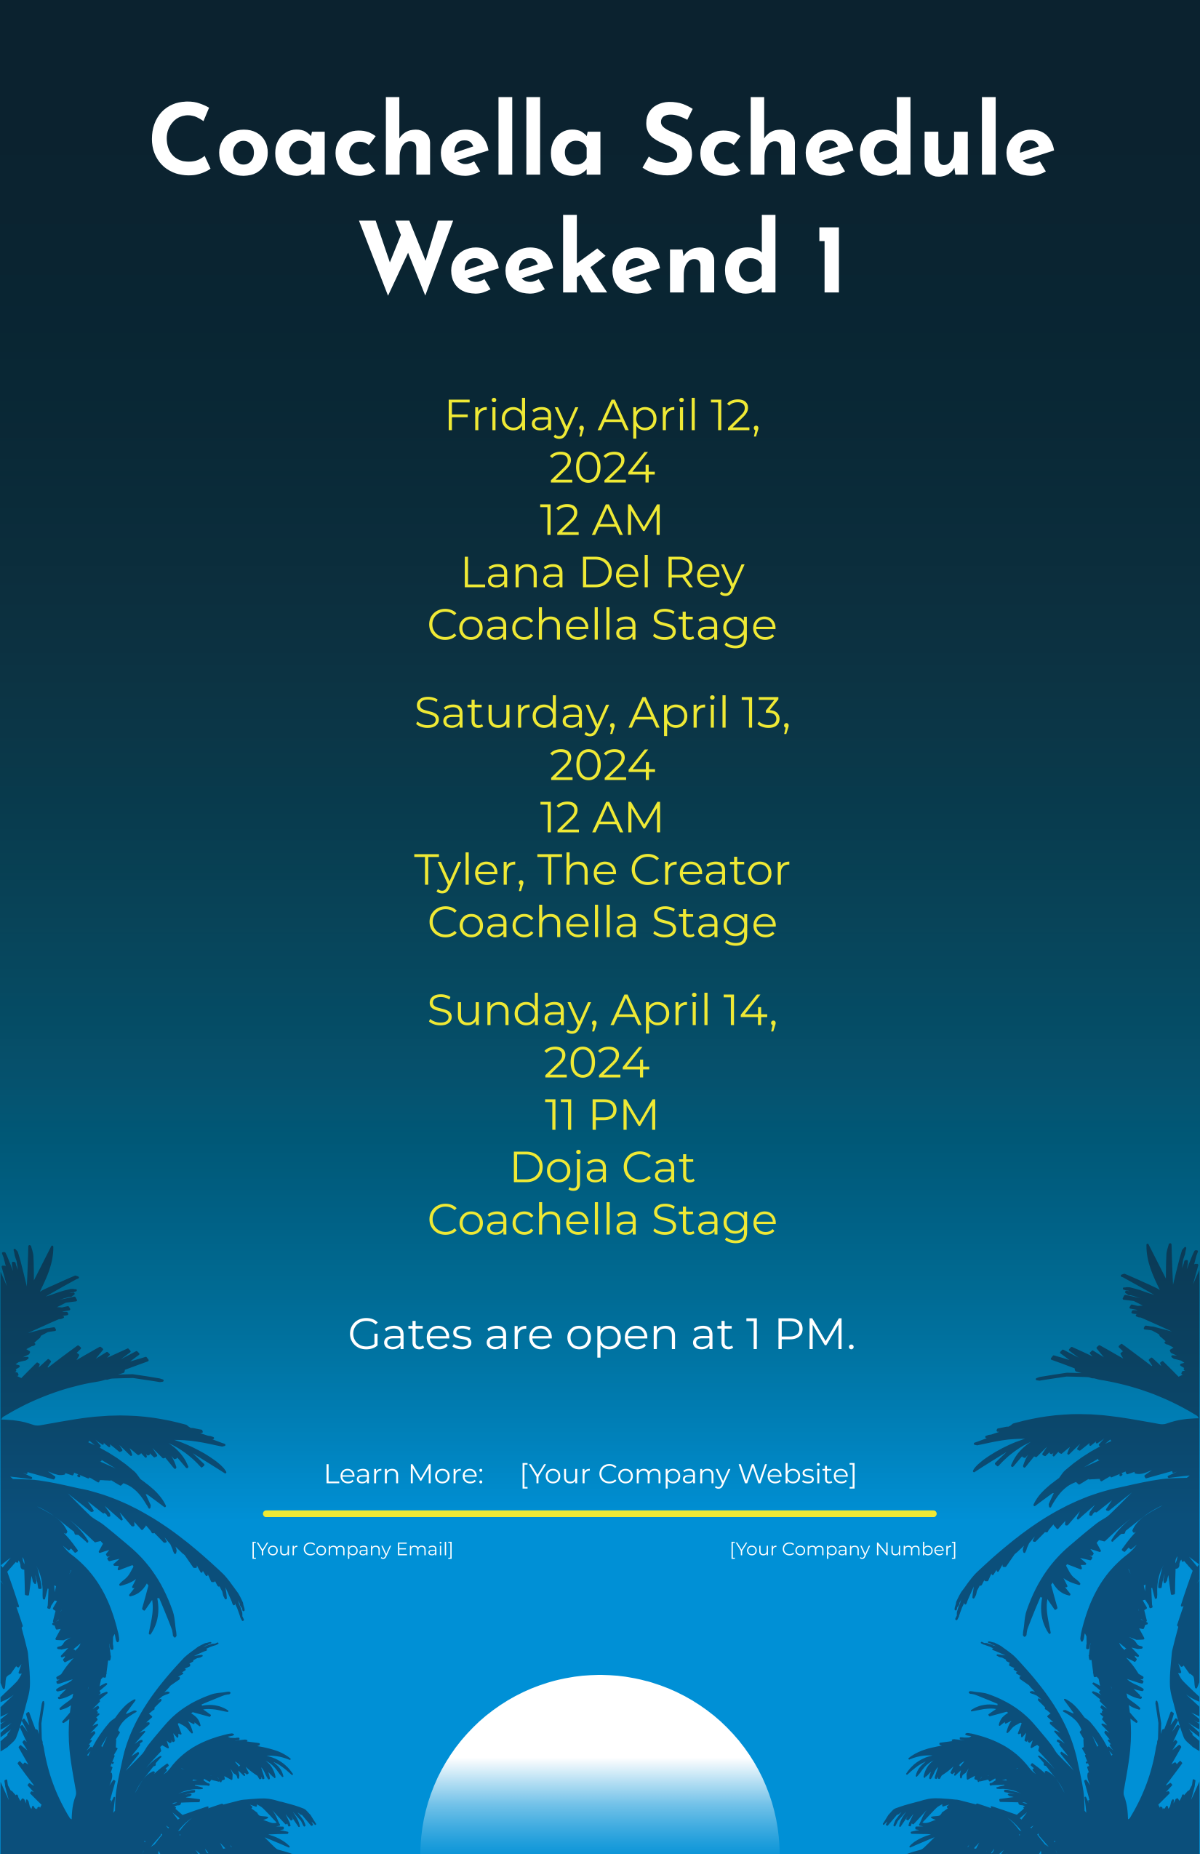 Coachella Schedule